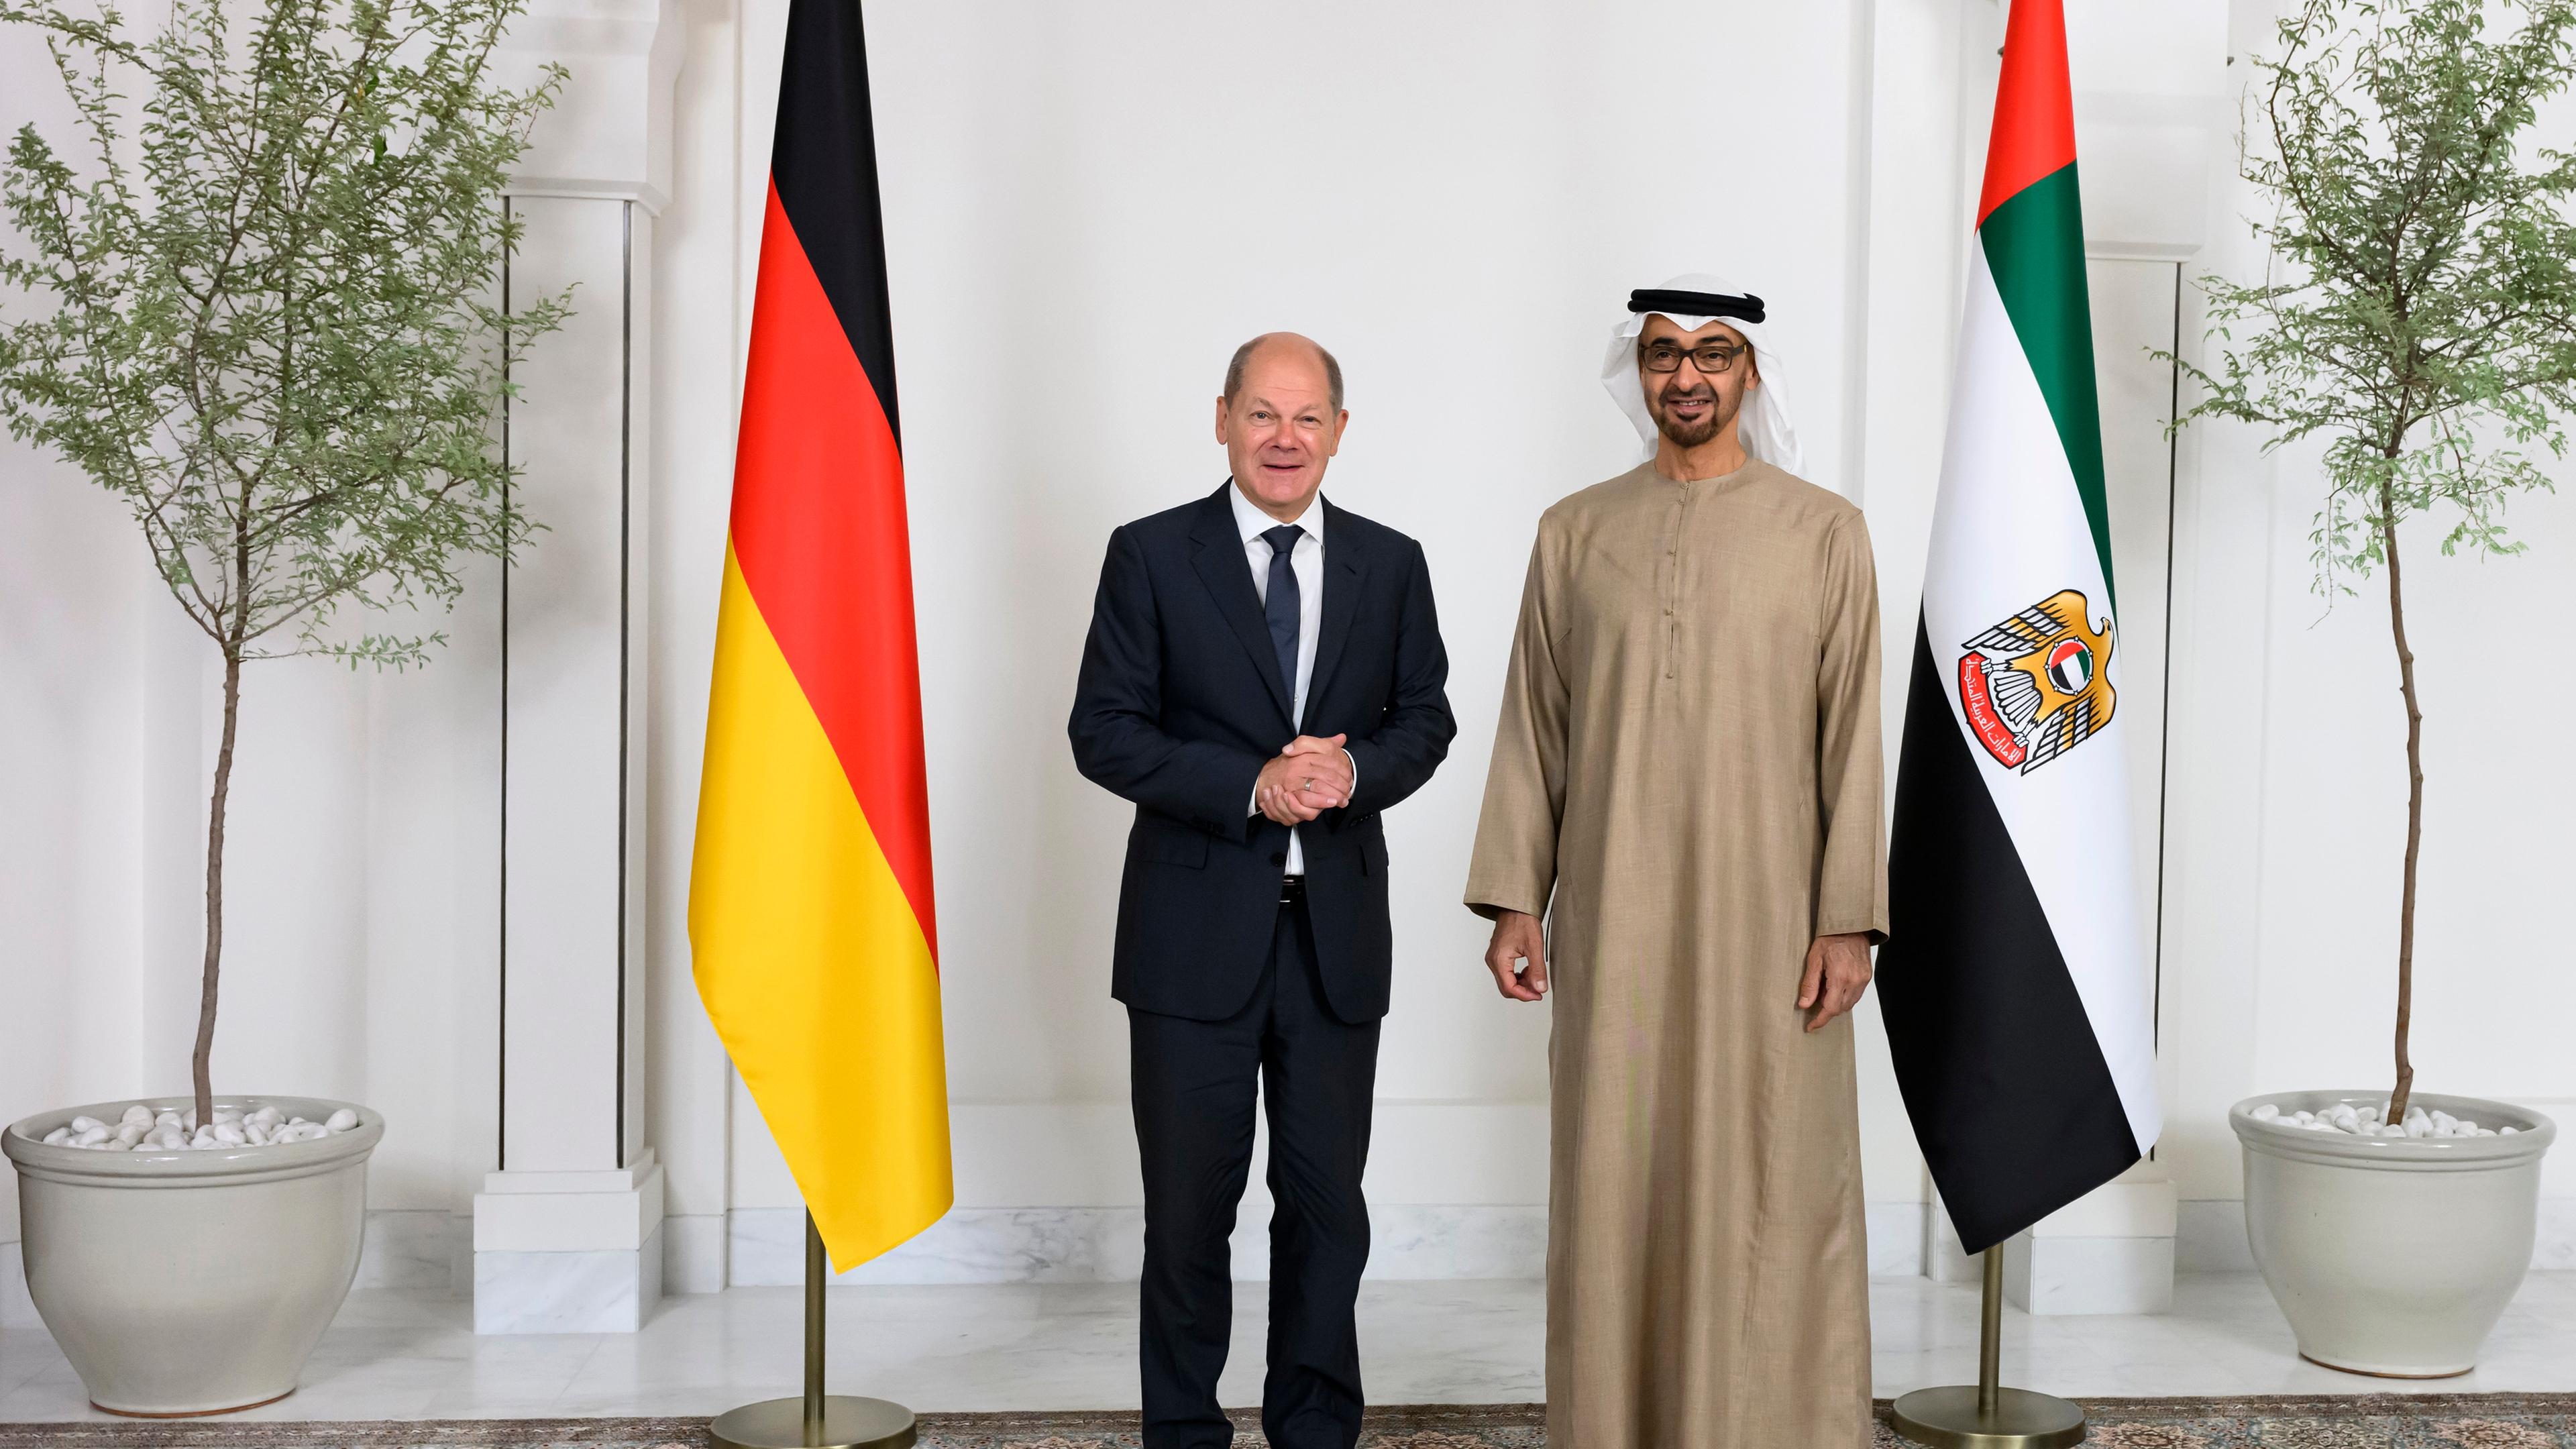 Katar, 25.09.2022: Kanzler Scholz trifft sich in Katar mit dem Präsidenten der Vereinigten Arabischen Emitate.